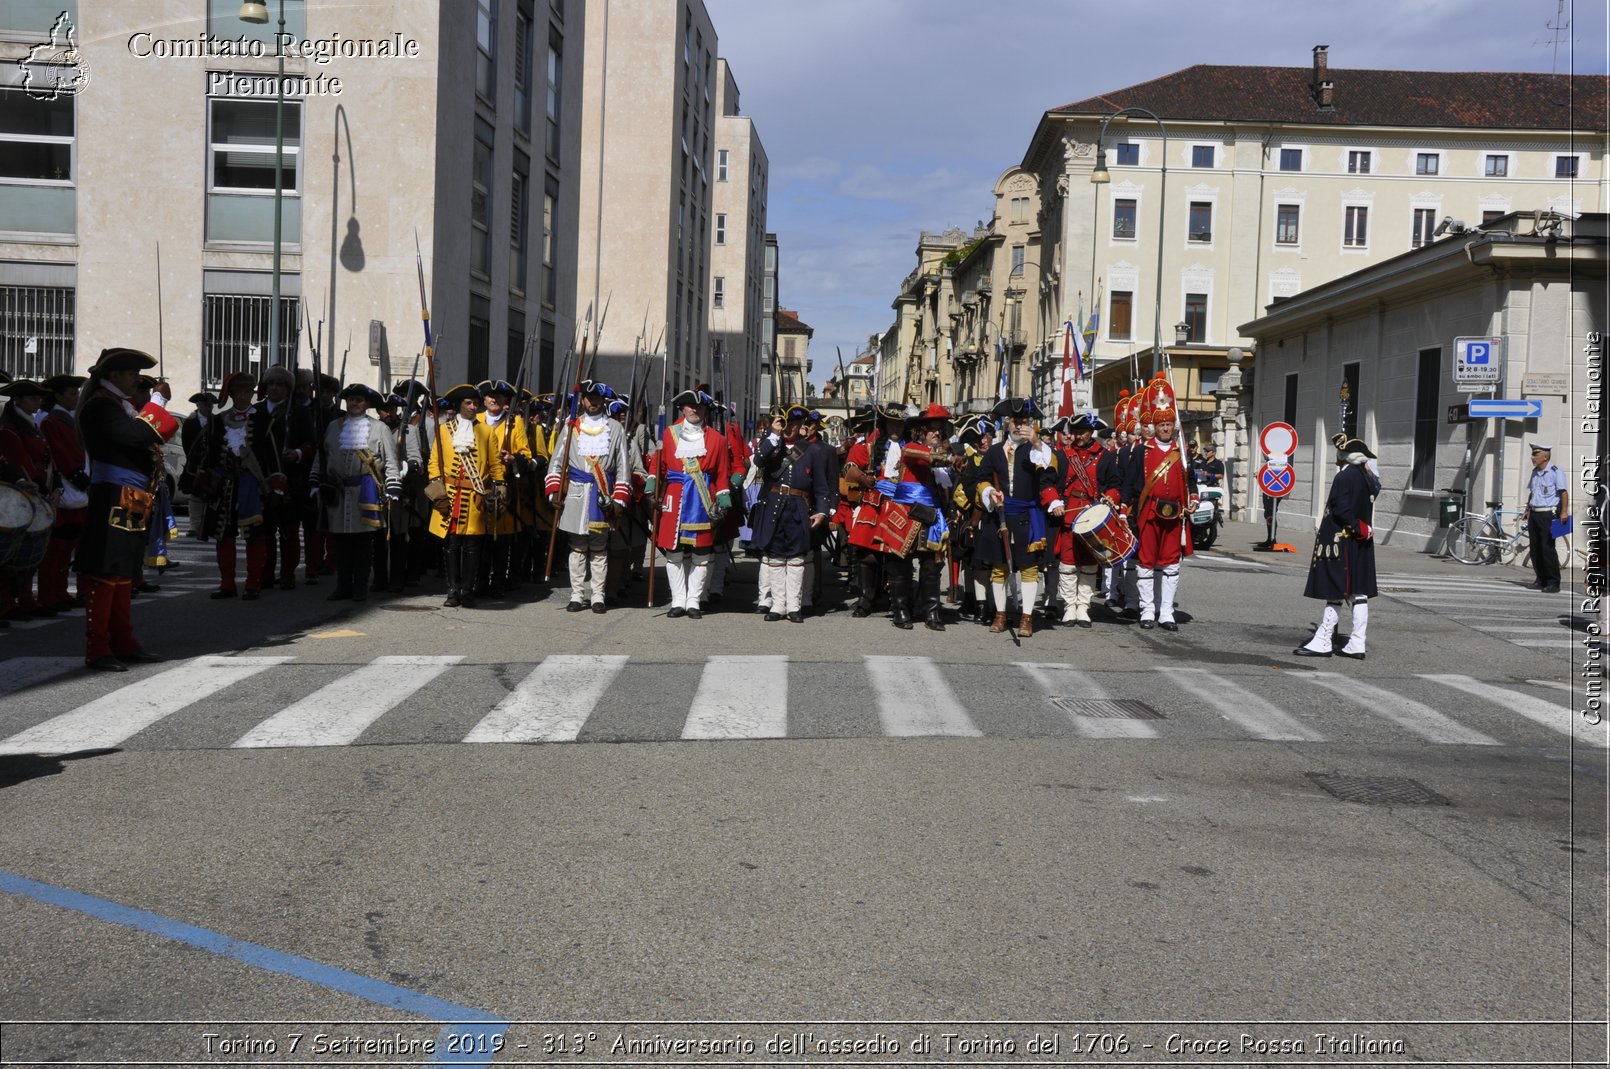 Torino 7 Settembre 2019 - 313 Anniversario dell'assedio di Torino del 1706 - Croce Rossa Italiana